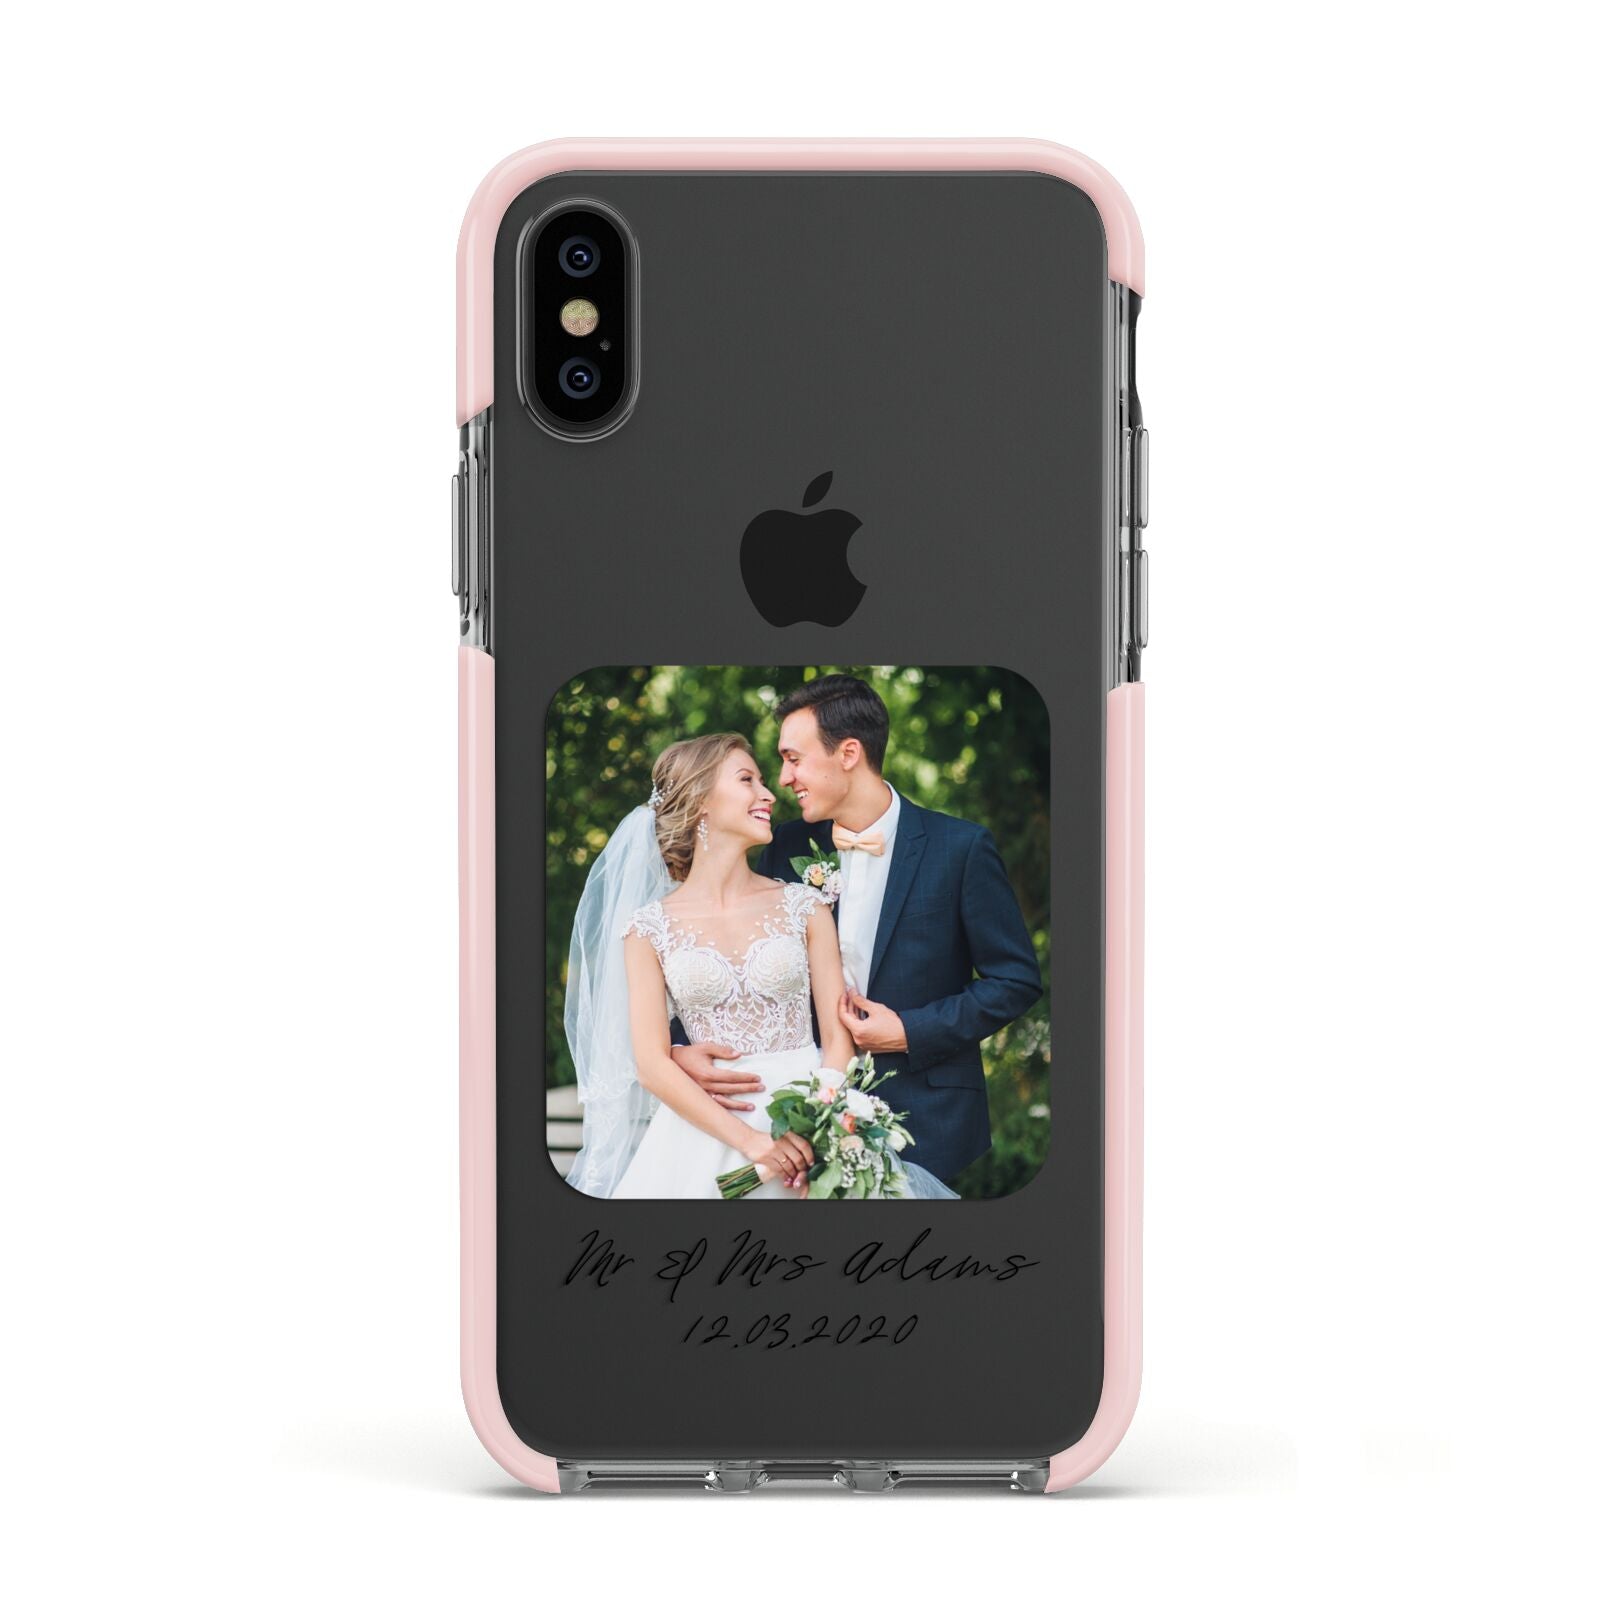 Wedding Photo Upload Keepsake with Text Apple iPhone Xs Impact Case Pink Edge on Black Phone